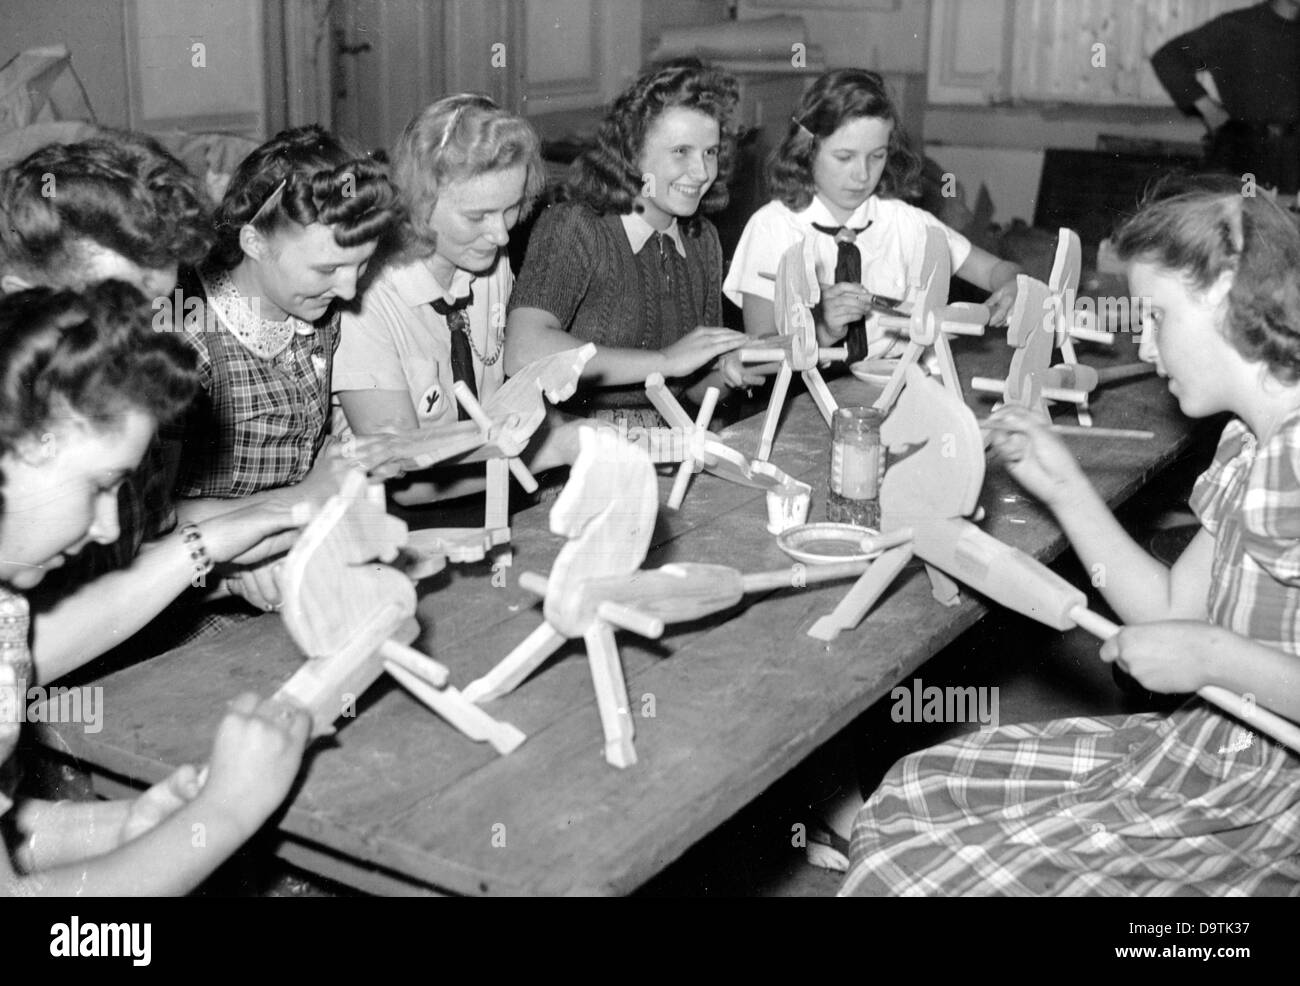 Les filles produisent des jouets pour Noël, pour le service de guerre de la Jeunesse d'Hitler (Ligue des filles allemandes, BDM), en septembre 1944. Fotoarchiv für Zeitgeschichte Banque D'Images